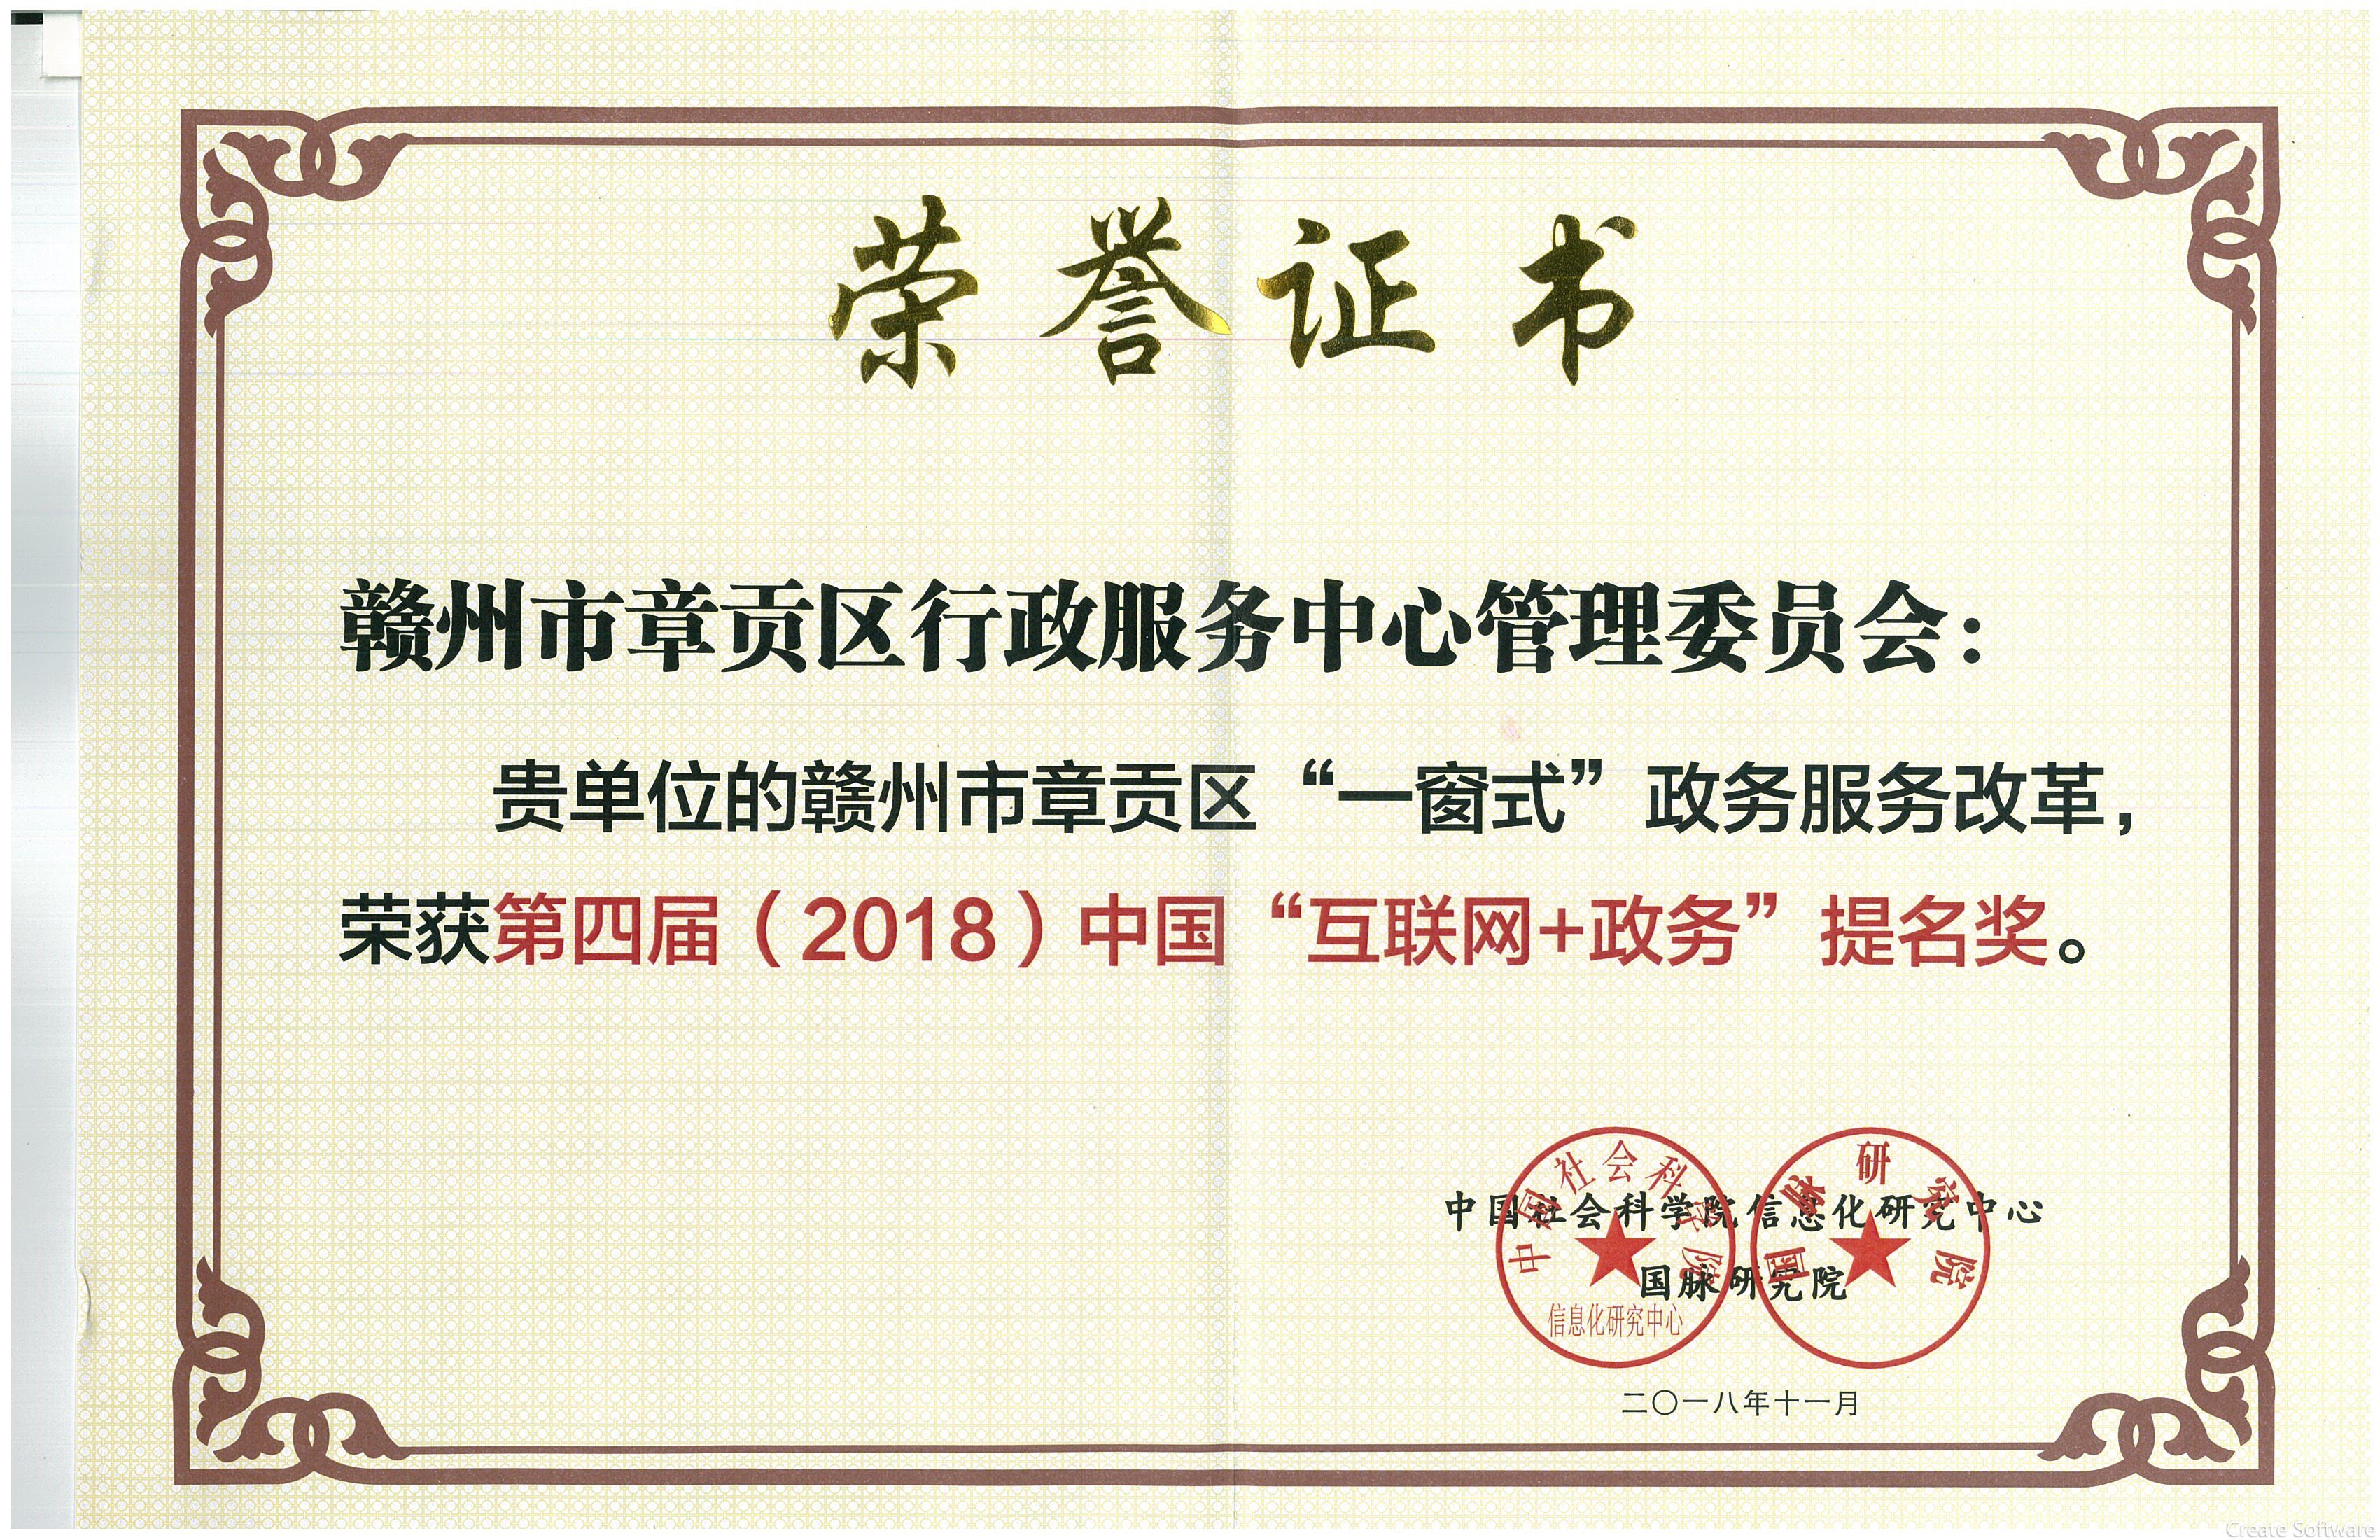 一窗式政务服务改革获第四届（2018）中国互联网+政务提名奖